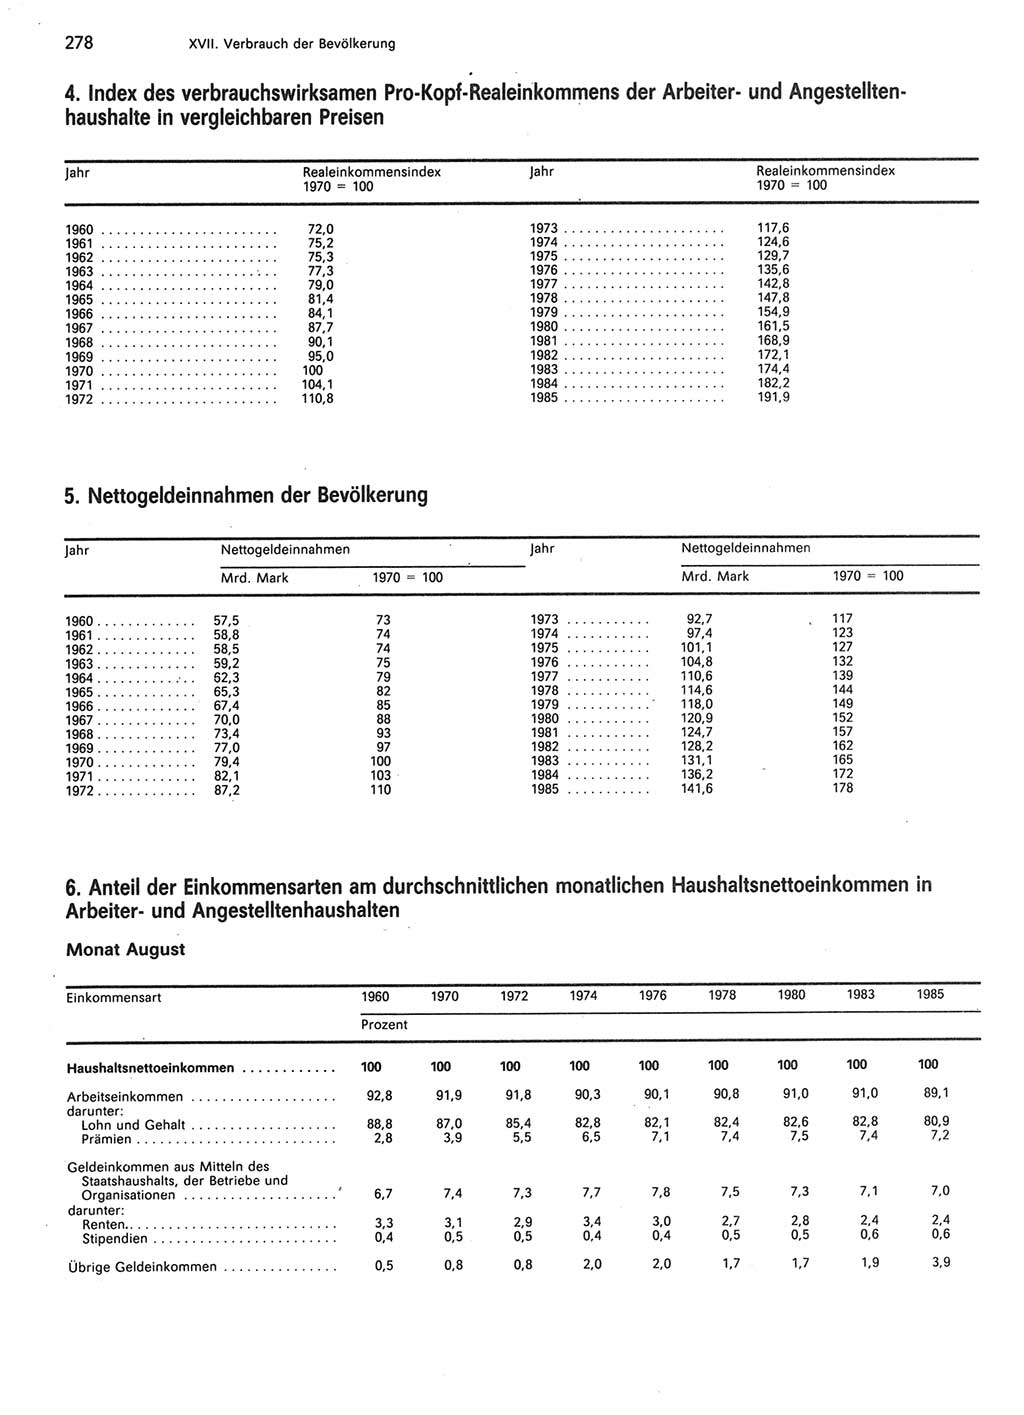 Statistisches Jahrbuch der Deutschen Demokratischen Republik (DDR) 1986, Seite 278 (Stat. Jb. DDR 1986, S. 278)